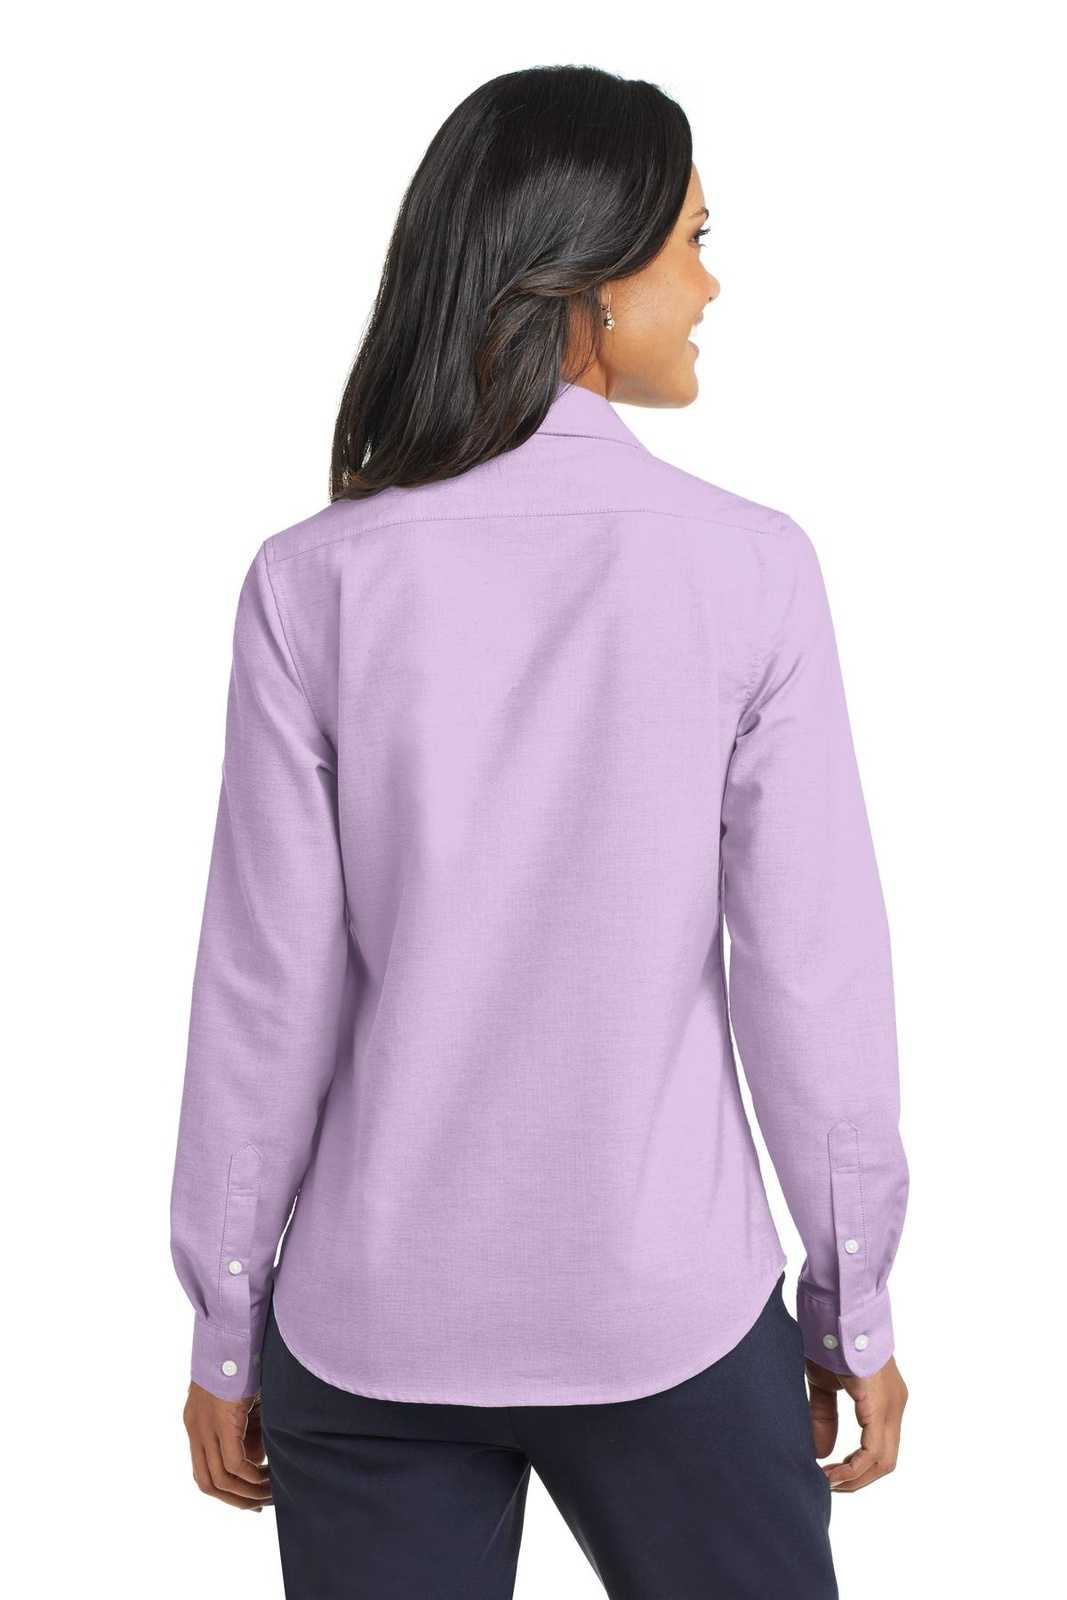 Port Authority L658 Ladies Superpro Oxford Shirt - Soft Purple - HIT a Double - 1